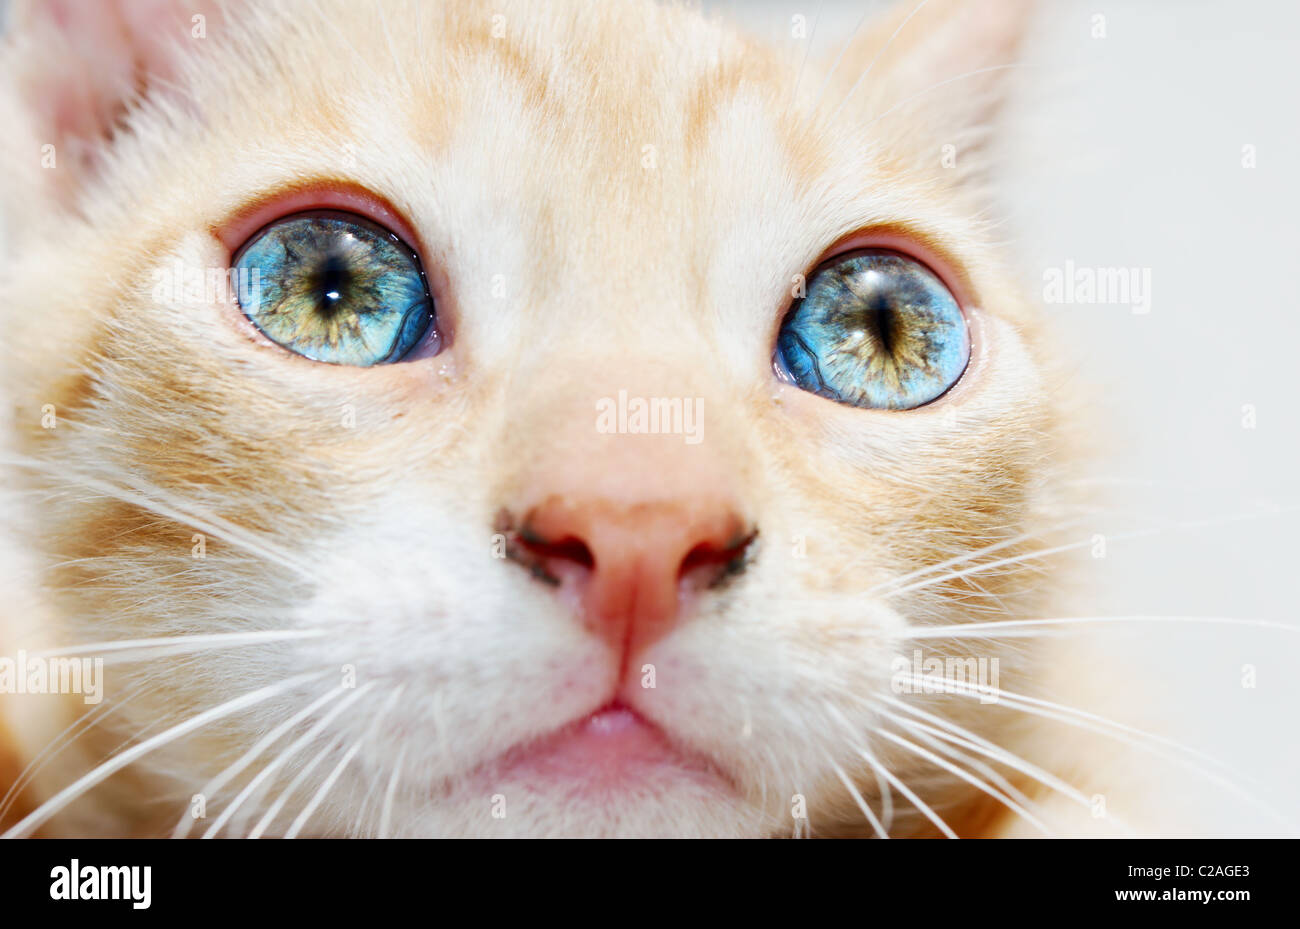 Détail de ginger kitten visage avec des yeux bleu vif (selective focus sur l'œil gauche) Banque D'Images